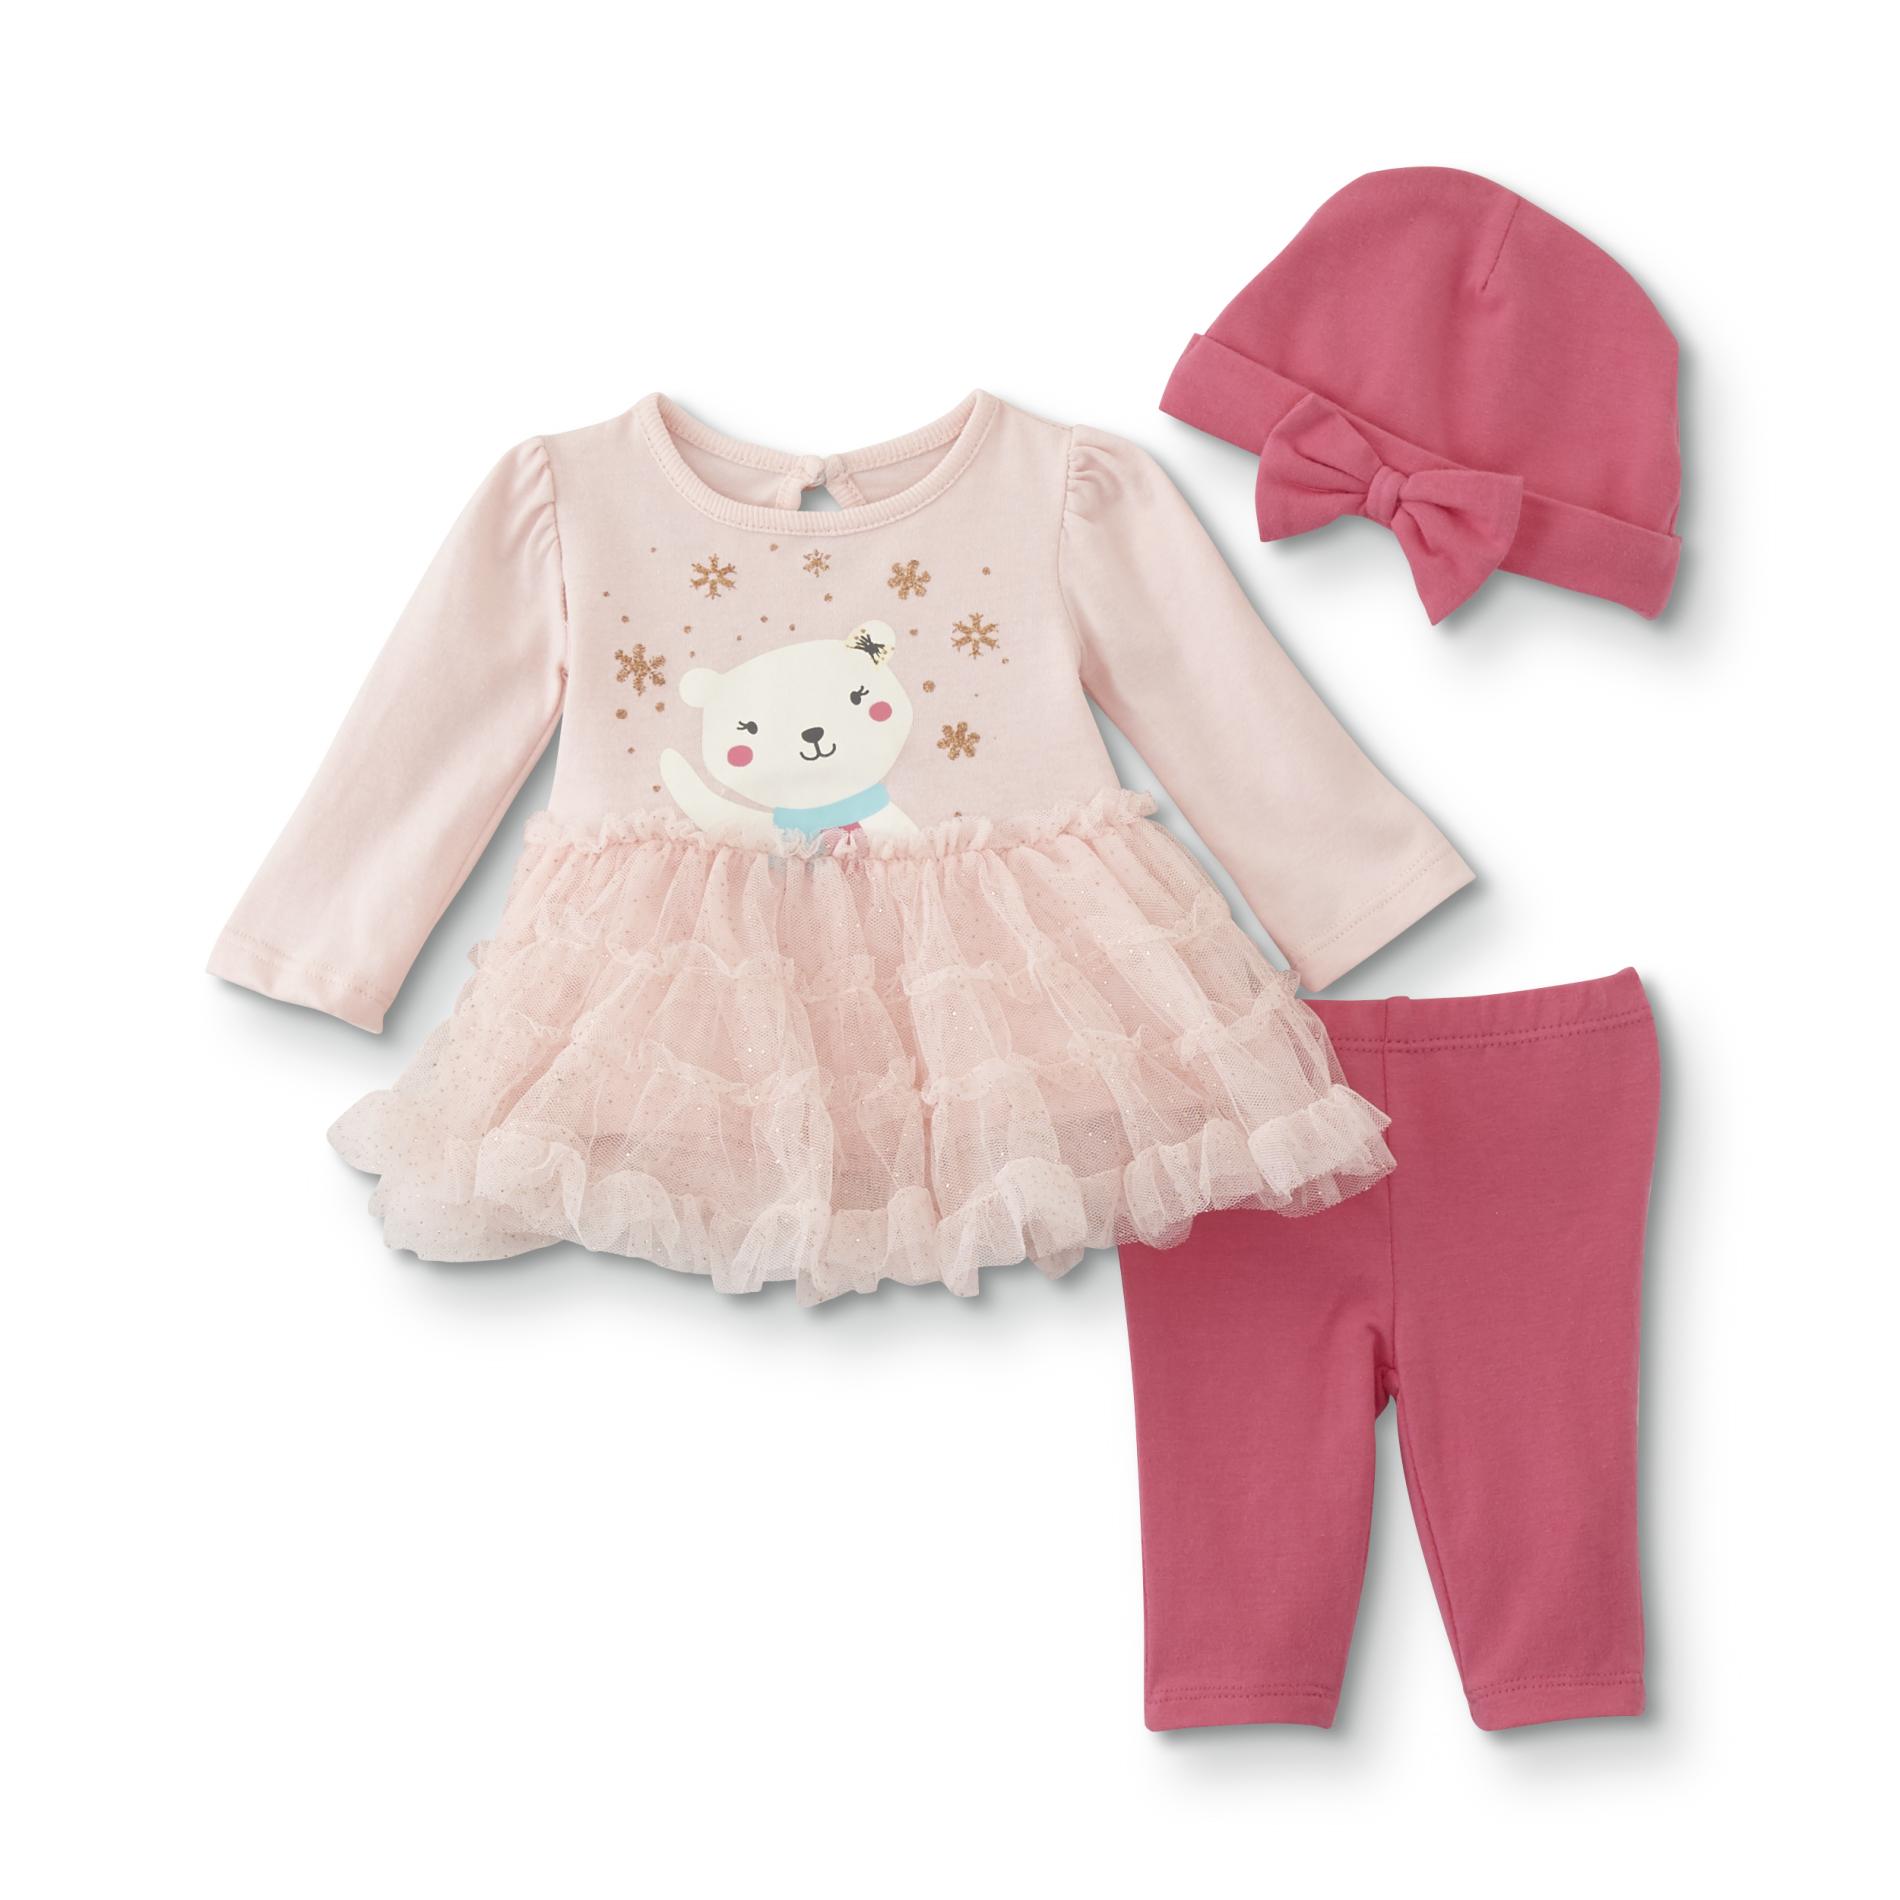 Little Wonders Infant Girls' Tutu Dress, Leggings & Cap - Polar Bear